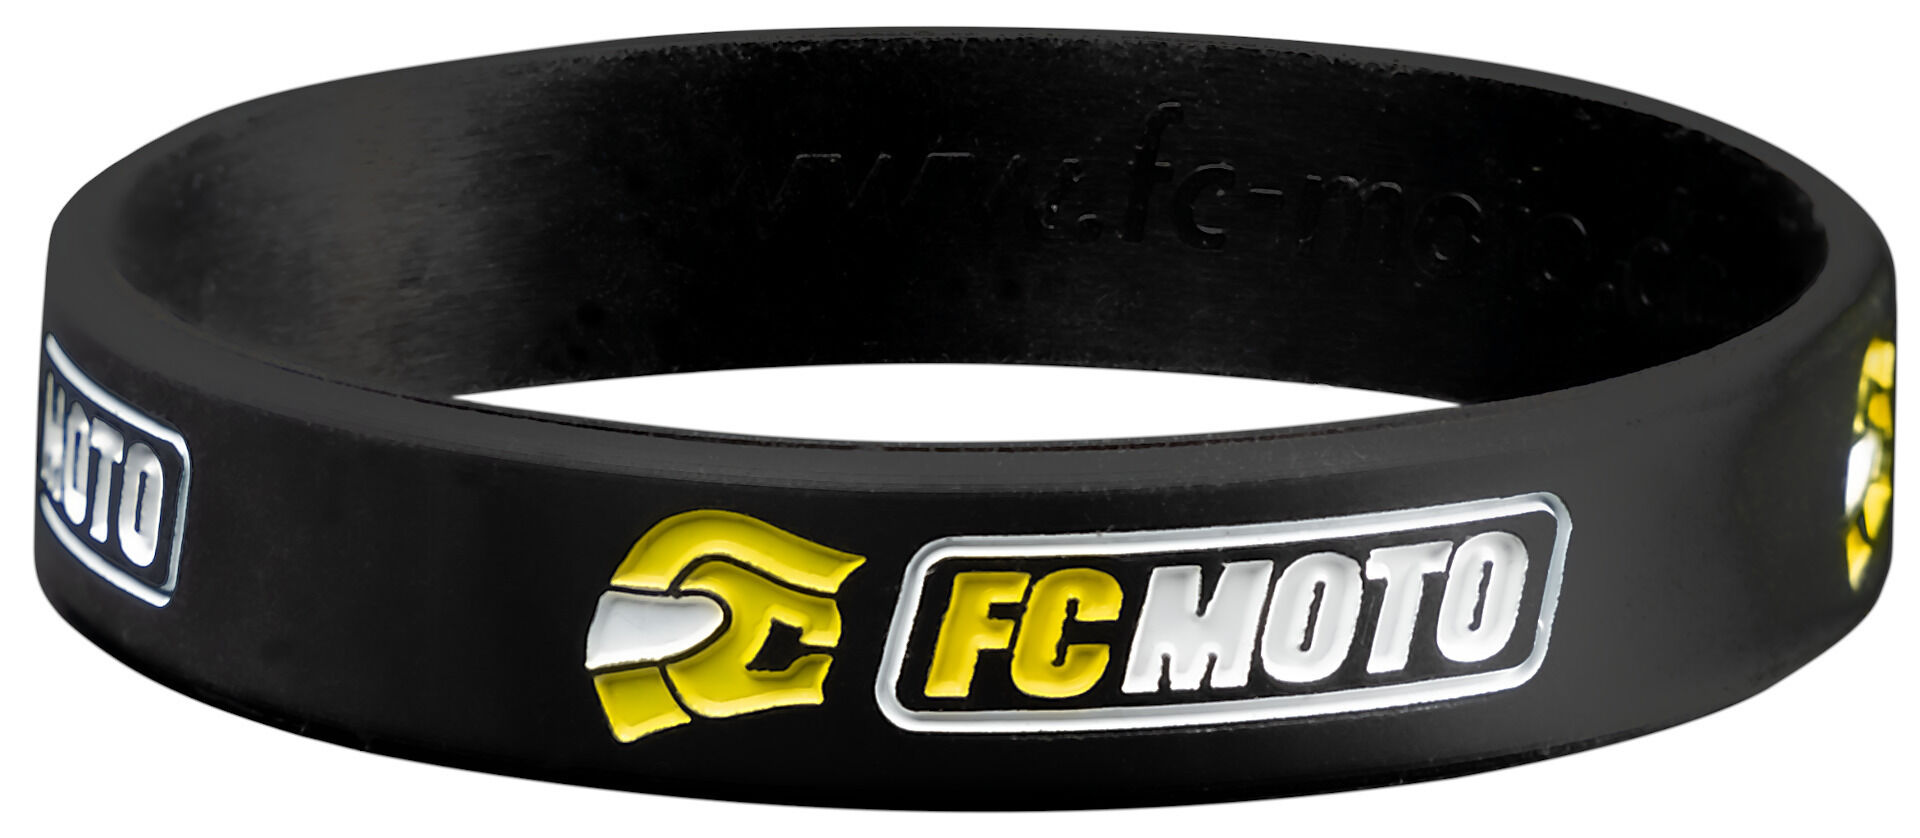 FC-Moto Náramek Jedna velikost Černá žlutá